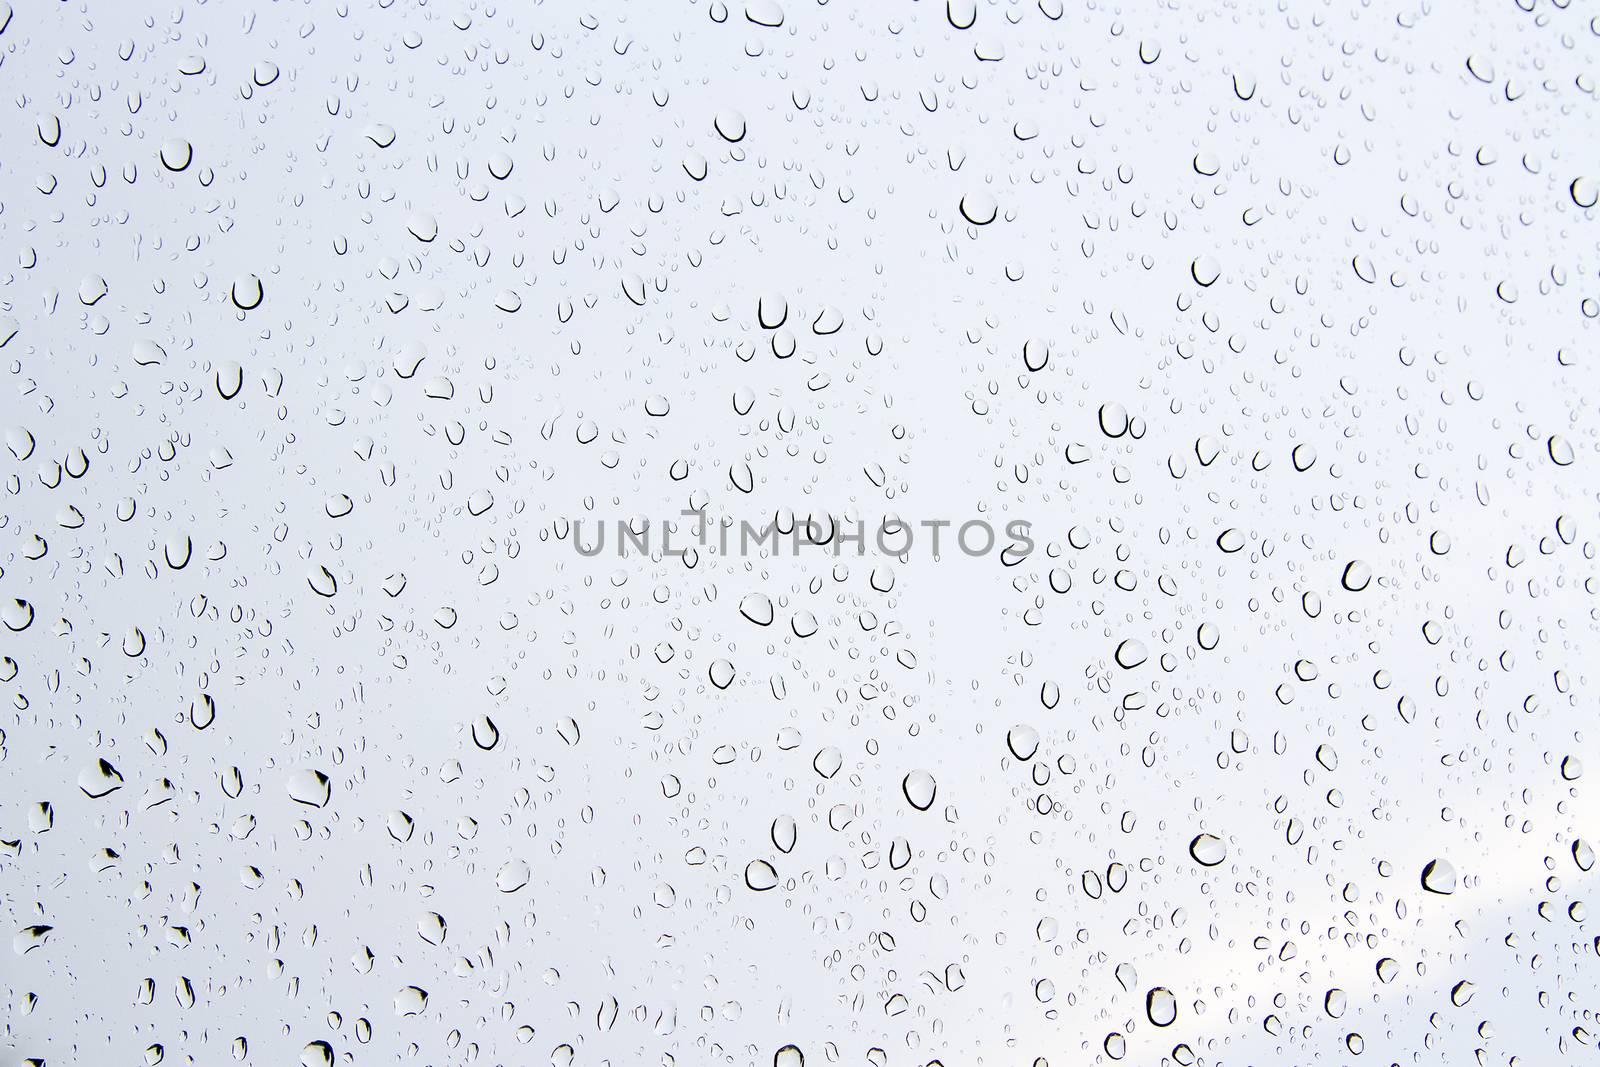 Water drops on glass. by TakerWalker